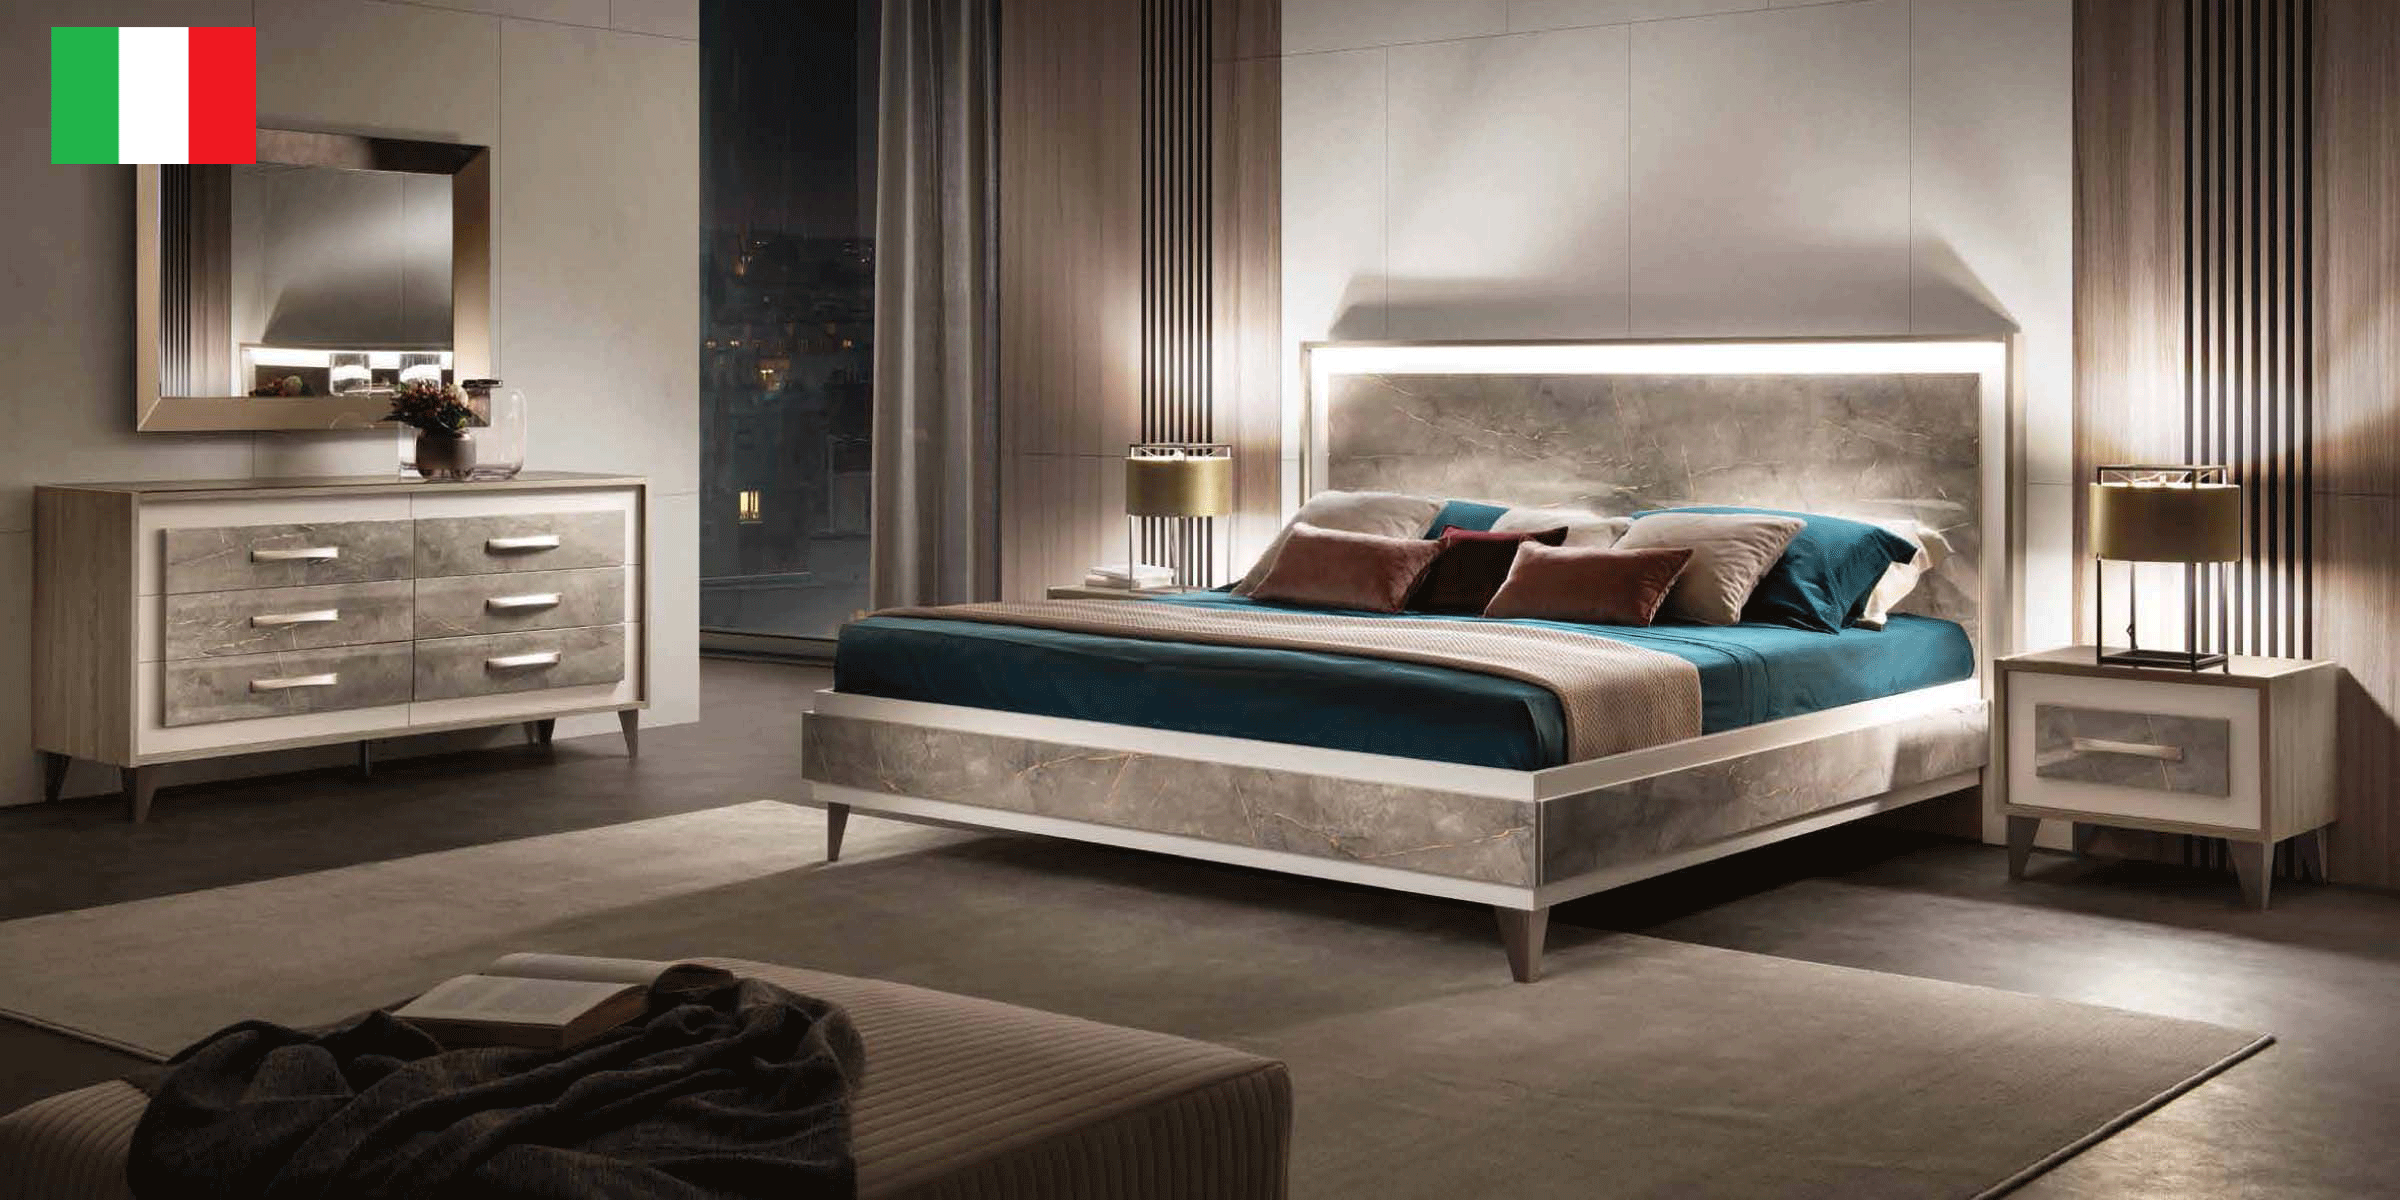 Bedroom Furniture Beds ArredoAmbra Bedroom by Arredoclassic with double dresser